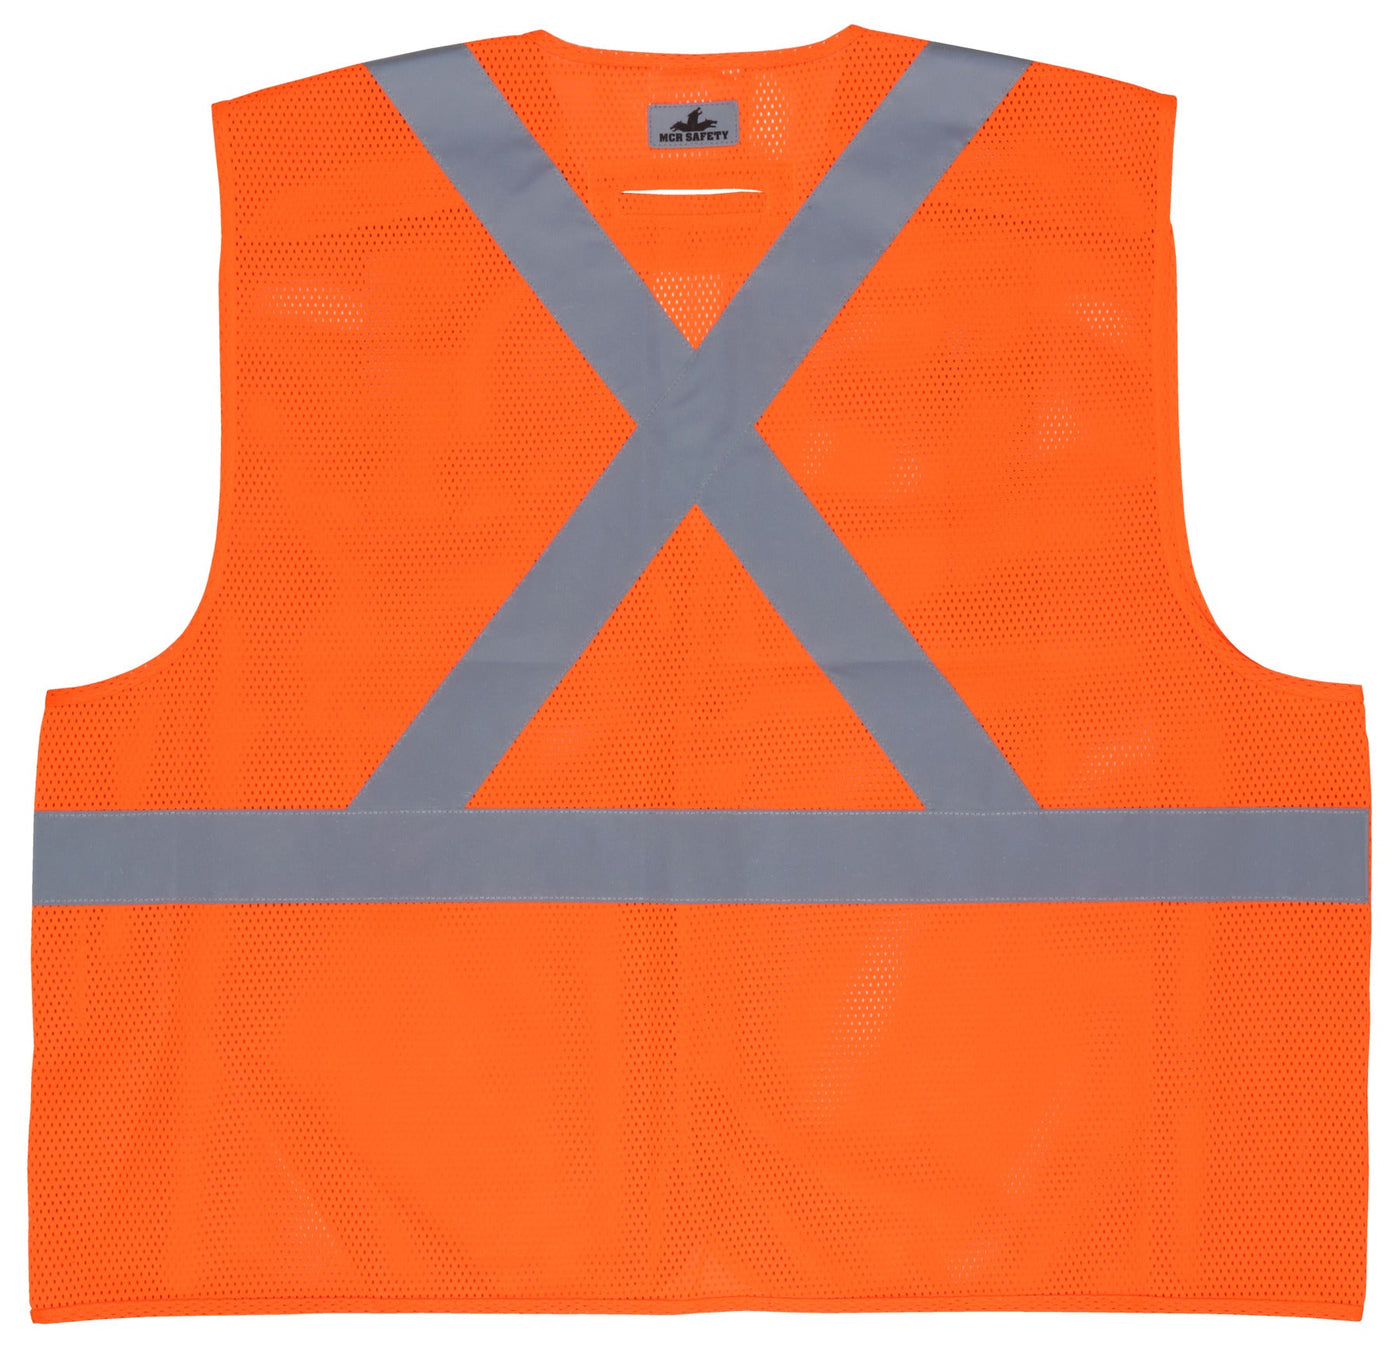 RXCL2MO - Hi Vis Reflective Orange Safety Vest